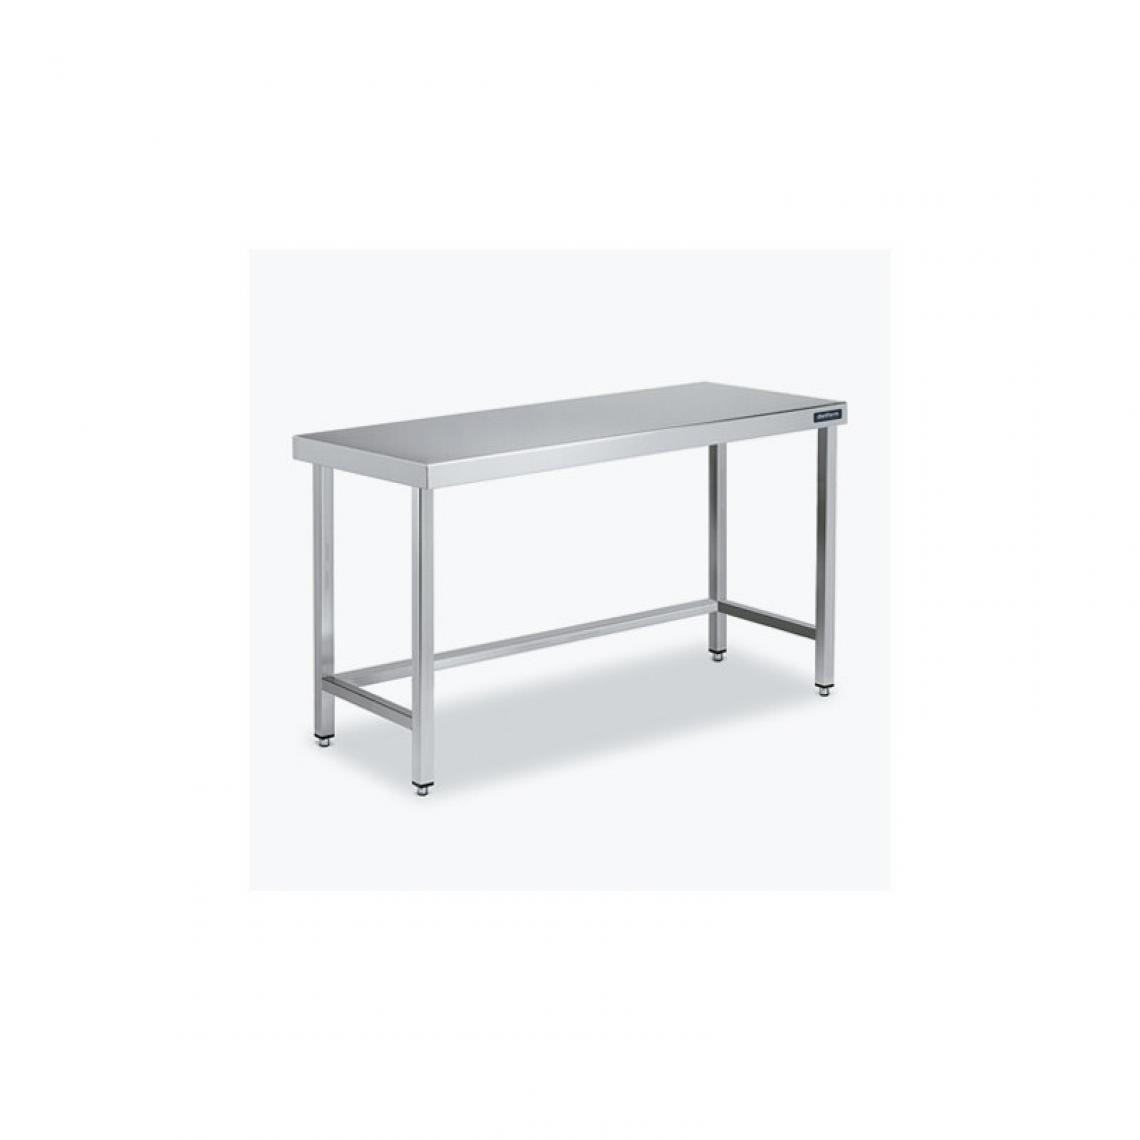 DISTFORM - Table Centrale 600x700 avec Renforts - Distform - Inox 18/101200x700x850mm - Tables à manger